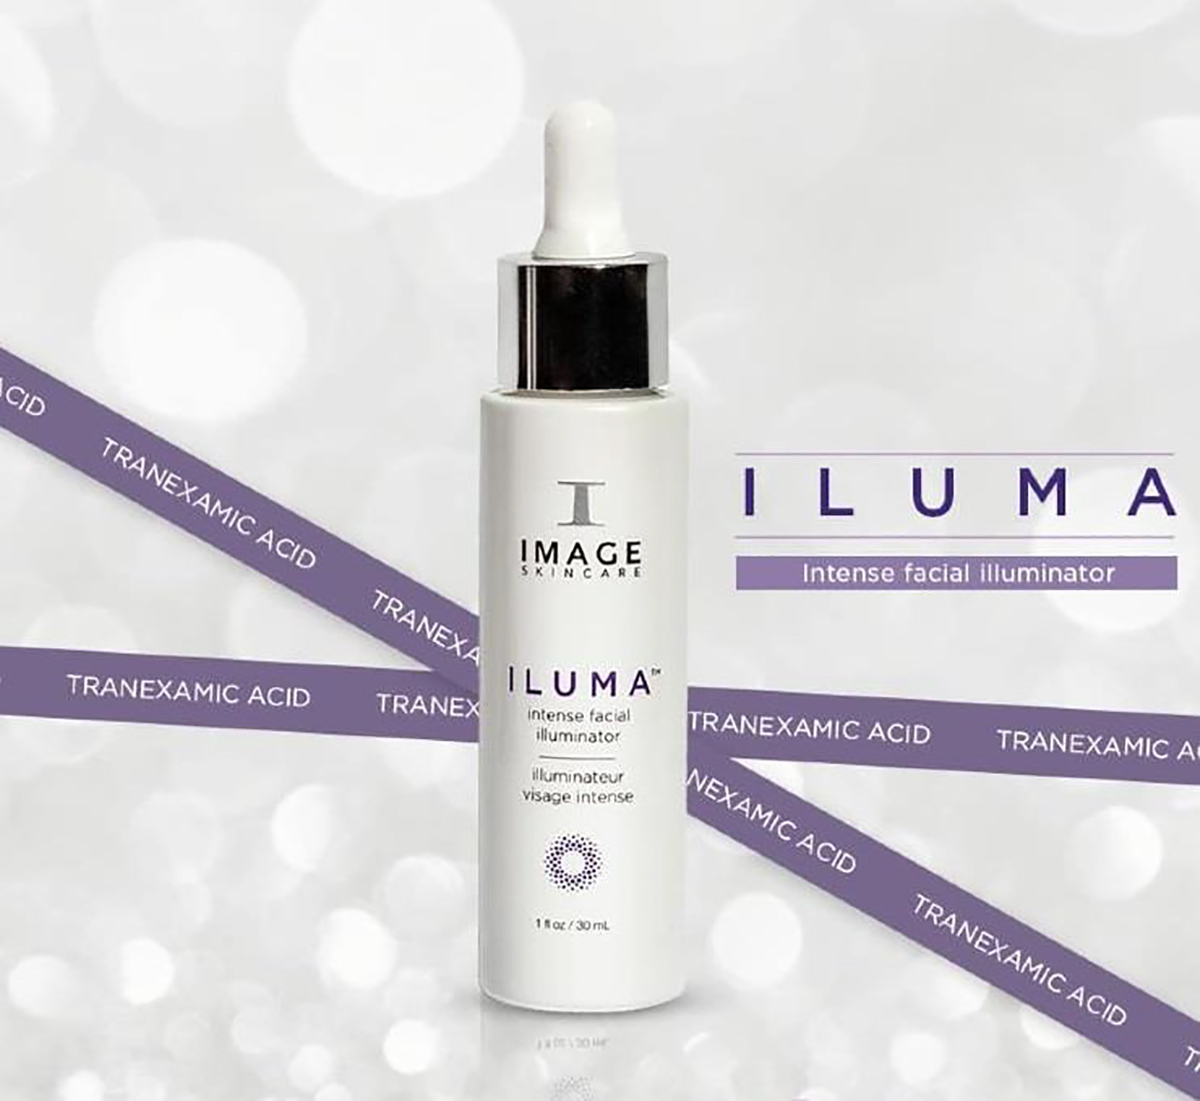 Serum Image ILUMA Intense Facial Illuminator có thật sự mang lại hiệu quả trị nám trong 4 tuần?